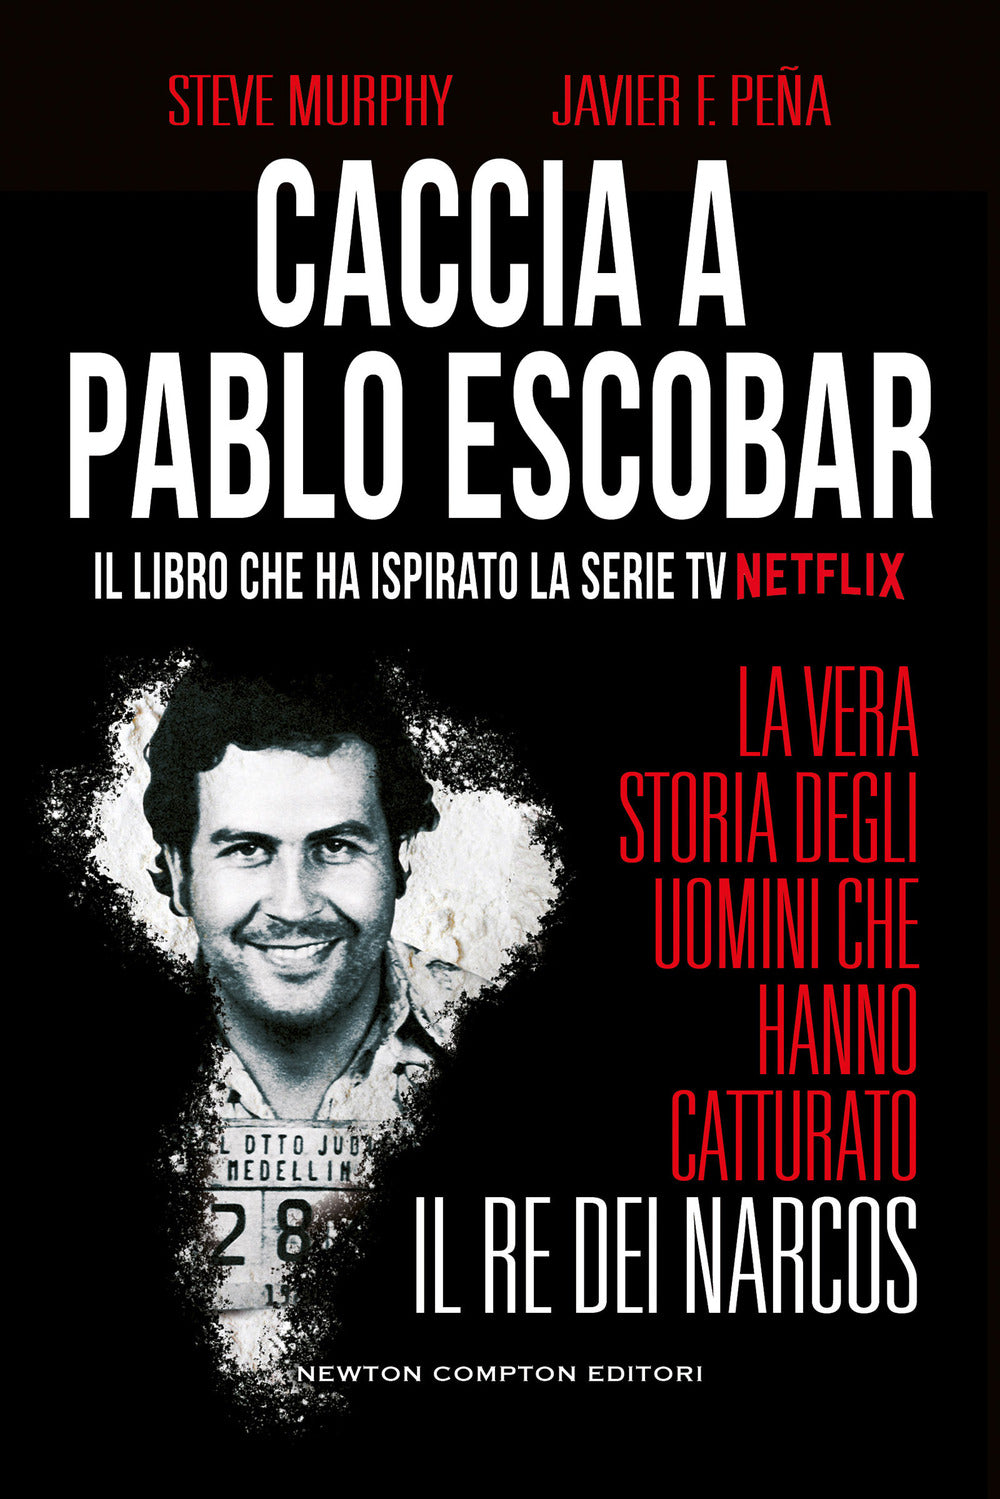 Caccia a Pablo Escobar. La vera storia degli uomini che hanno catturato il re dei narcos.